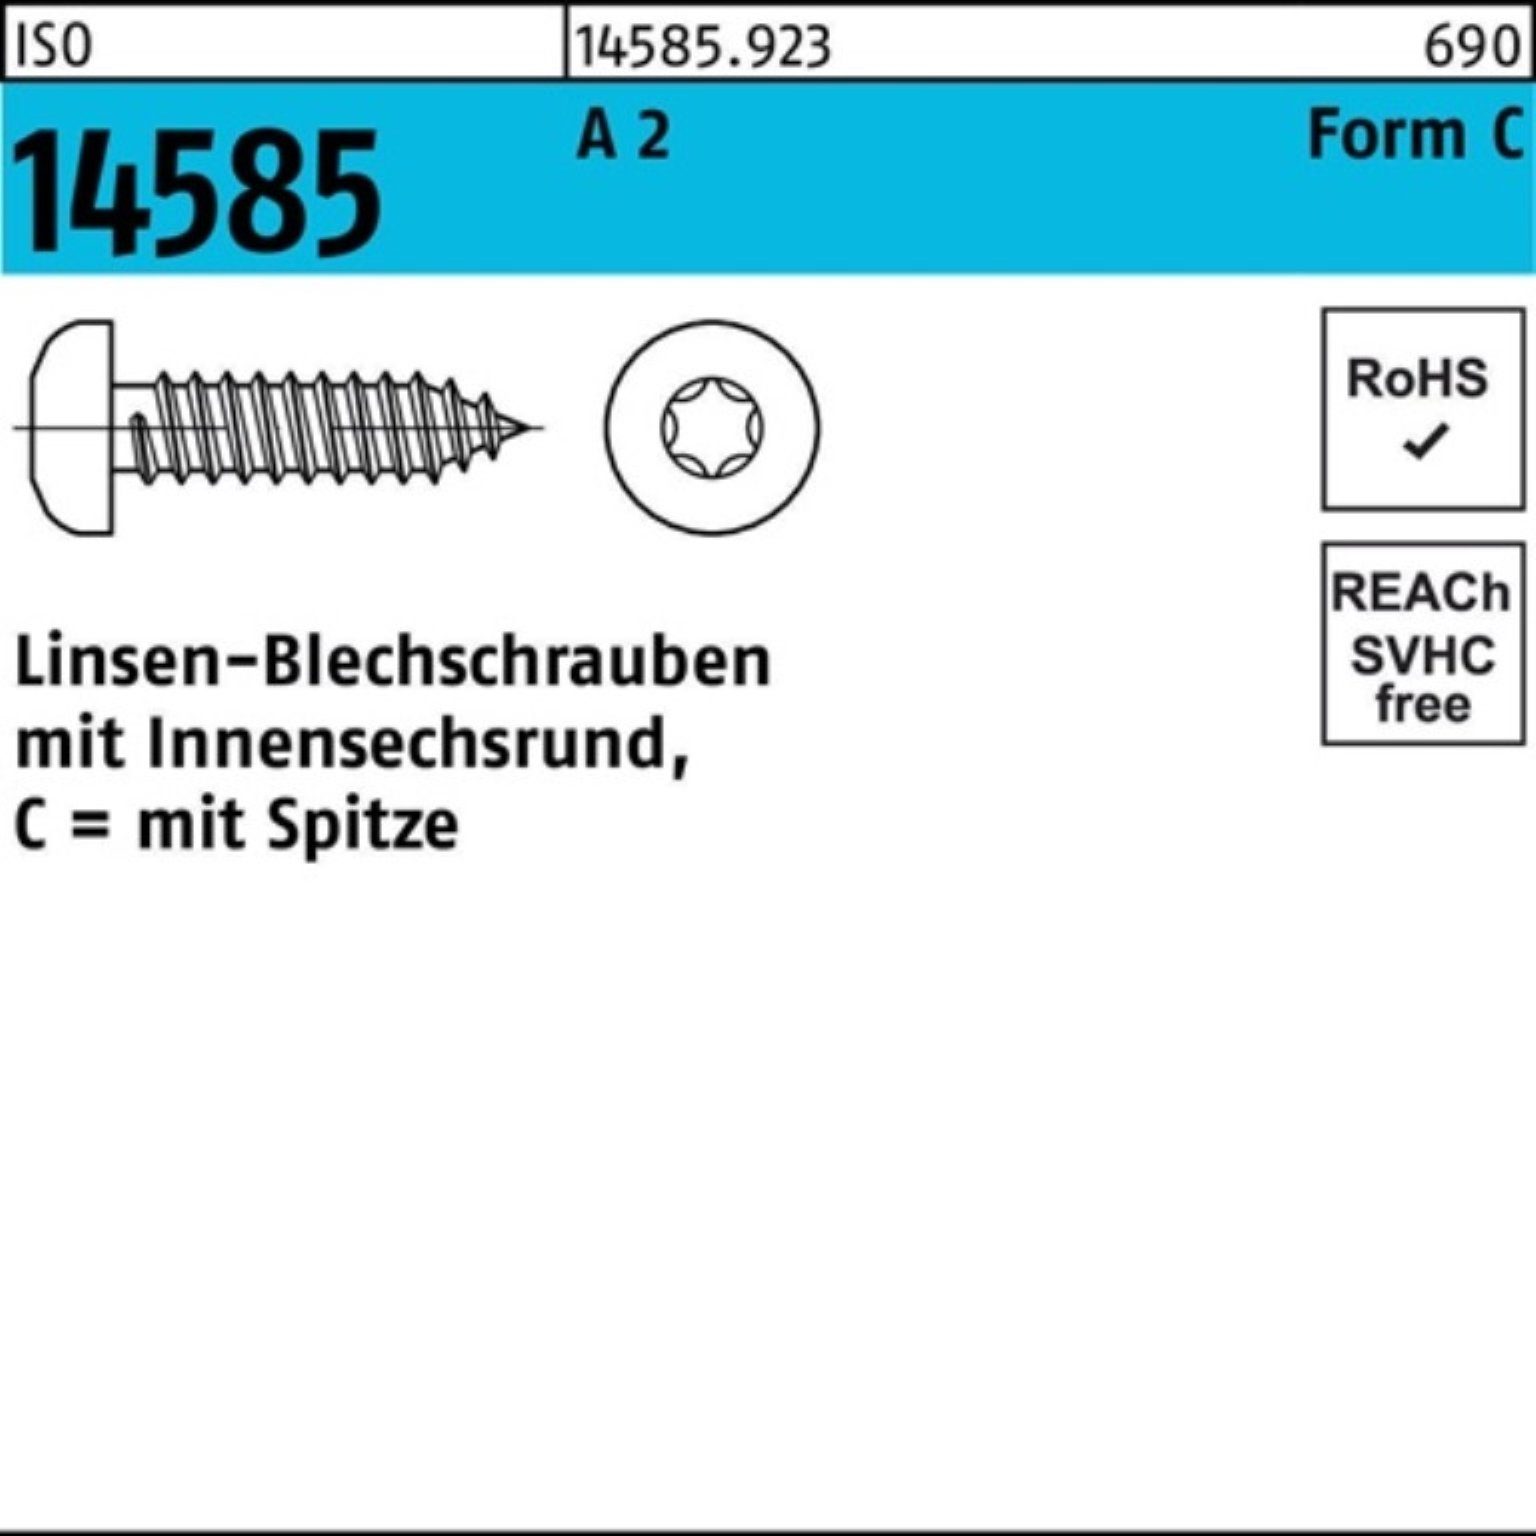 Reyher Blechschraube 500er Pack St 500 -C 4,8x T25 ISO 22 14585 Linsenblechschraube ISR 2 A